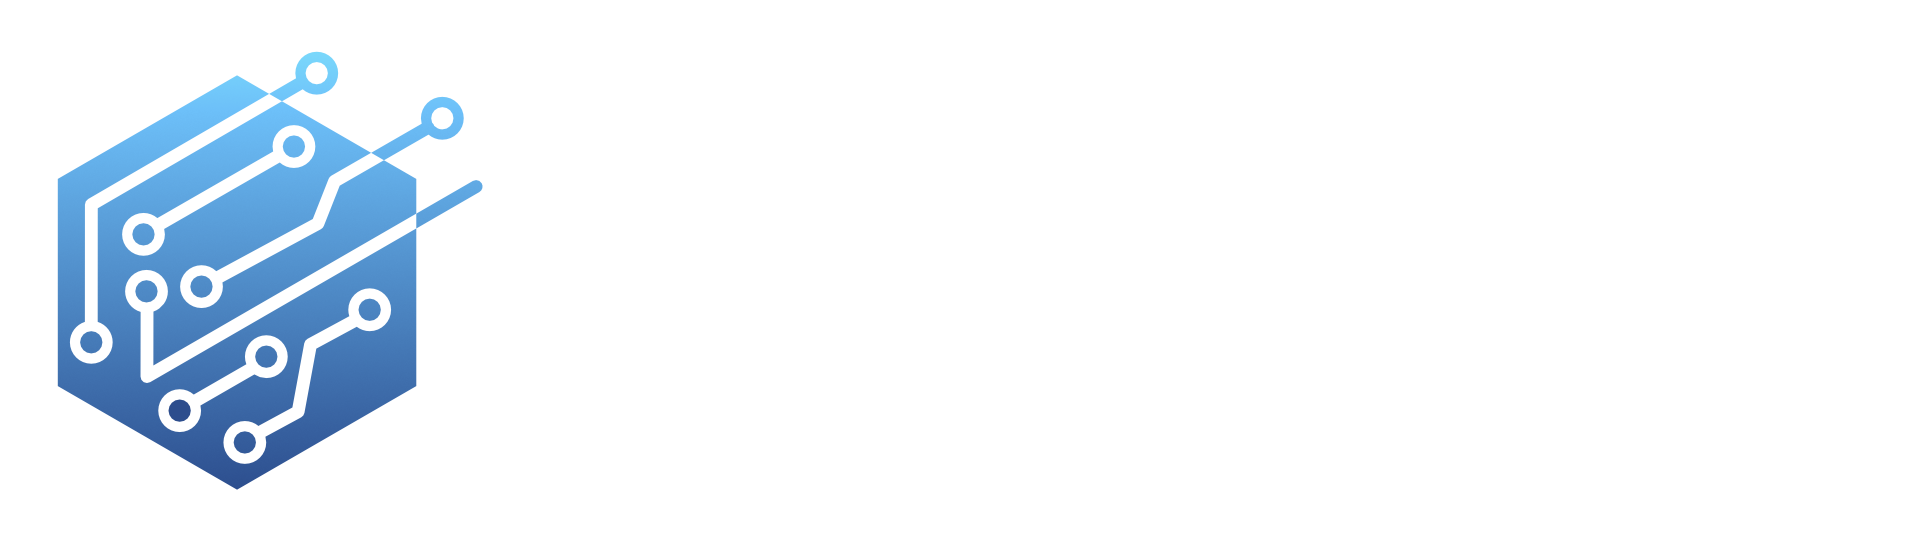 BlockFo Header Logo